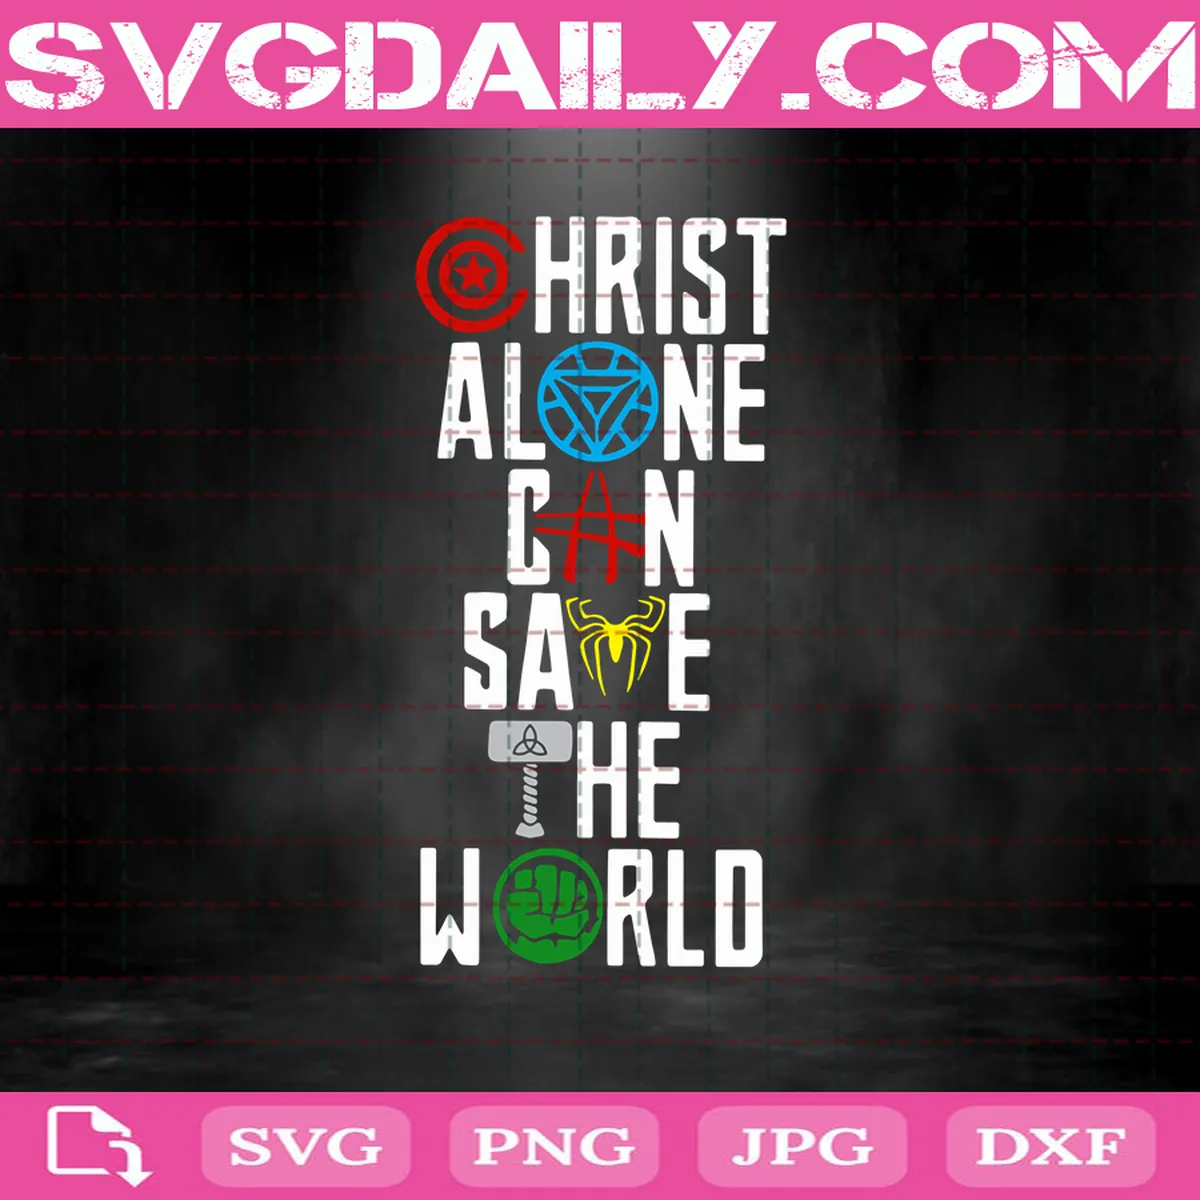 Christ Alone Can Save The World Svg, Jesus Svg, Prayer Svg, Peace Svg, Positivity Svg, Jesus Christ Svg, Superhero Logo Svg, Jesus Love Svg